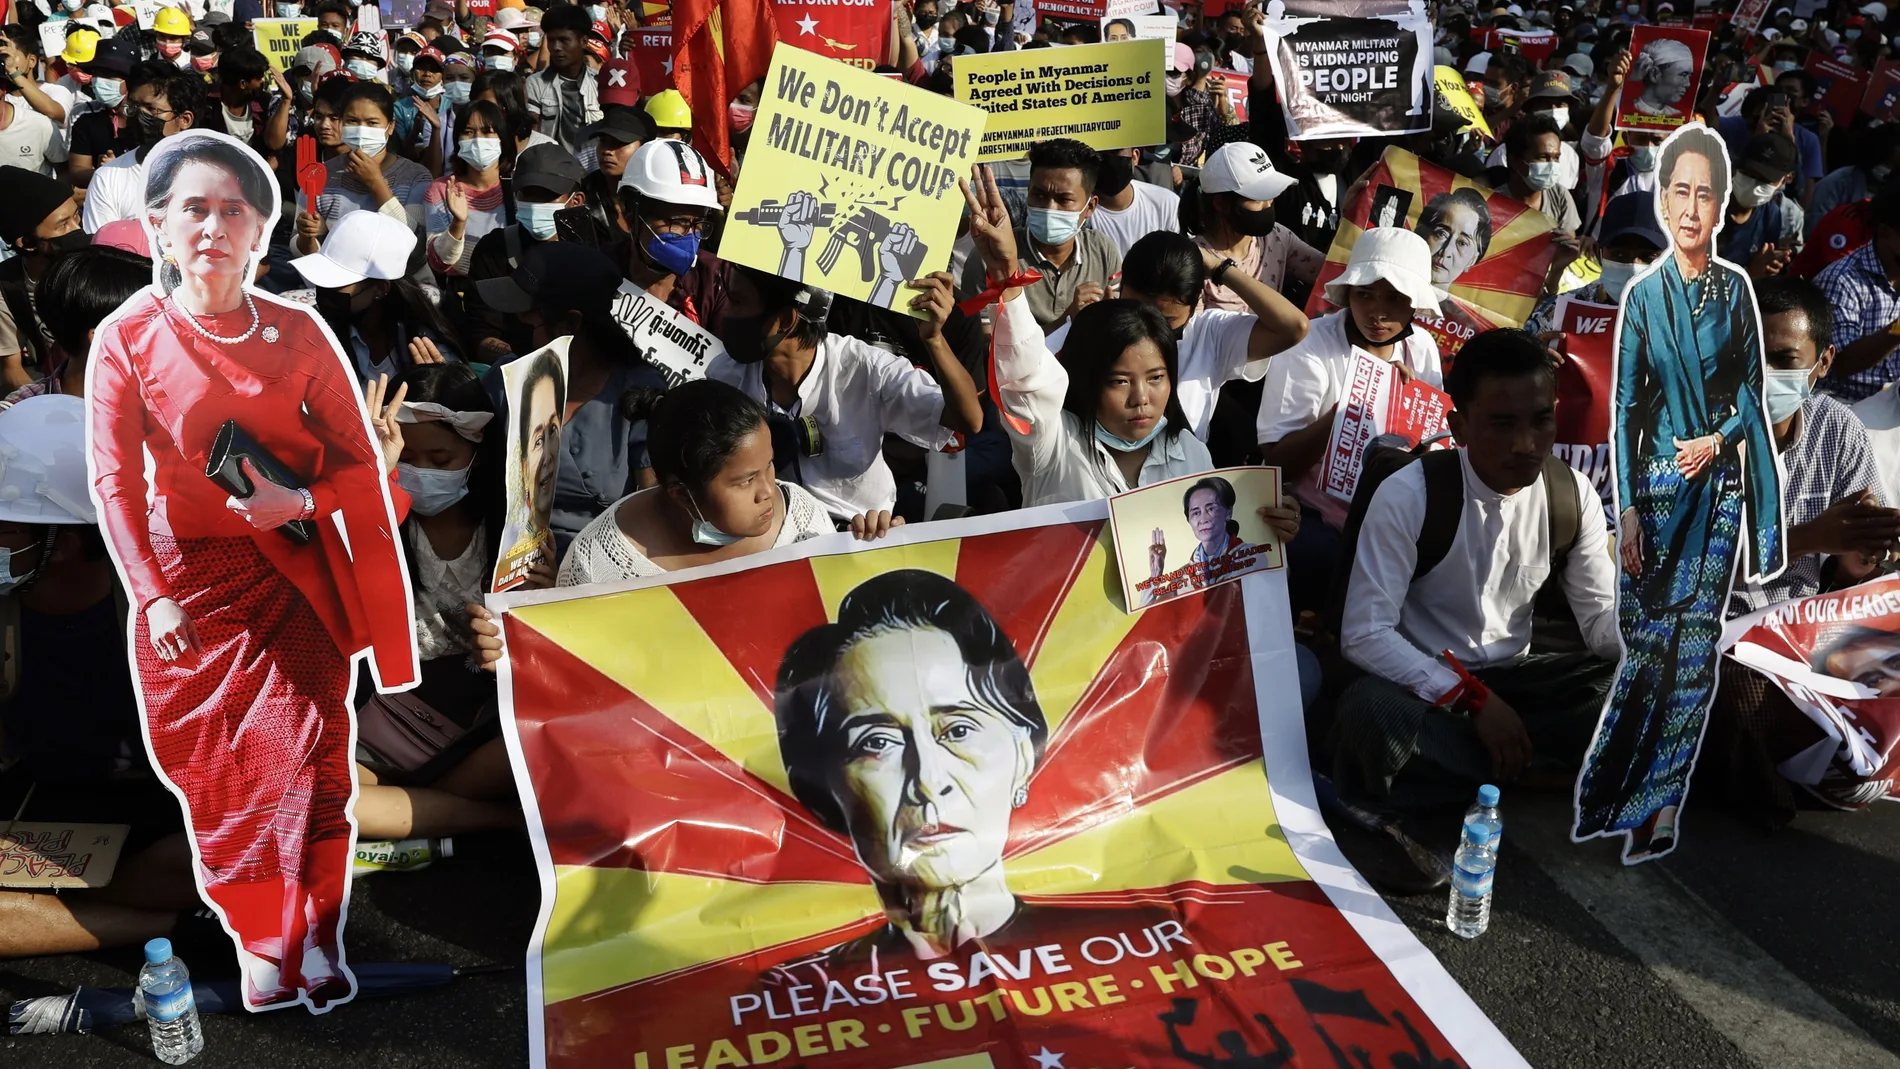 Varias personas se manifiestan en contra del golpe de estado en las calles de Rangún, Birmana este lunes. La líder electa de Birmania, Aung San Suu Kyi, permanecerá detenida por lo menos hasta el miércoles cuando podría comparecer ante un juez, mientras aumenta la represión del Ejercito y continúan las protestas contra el golpe militar ejecutado hace dos semanas.